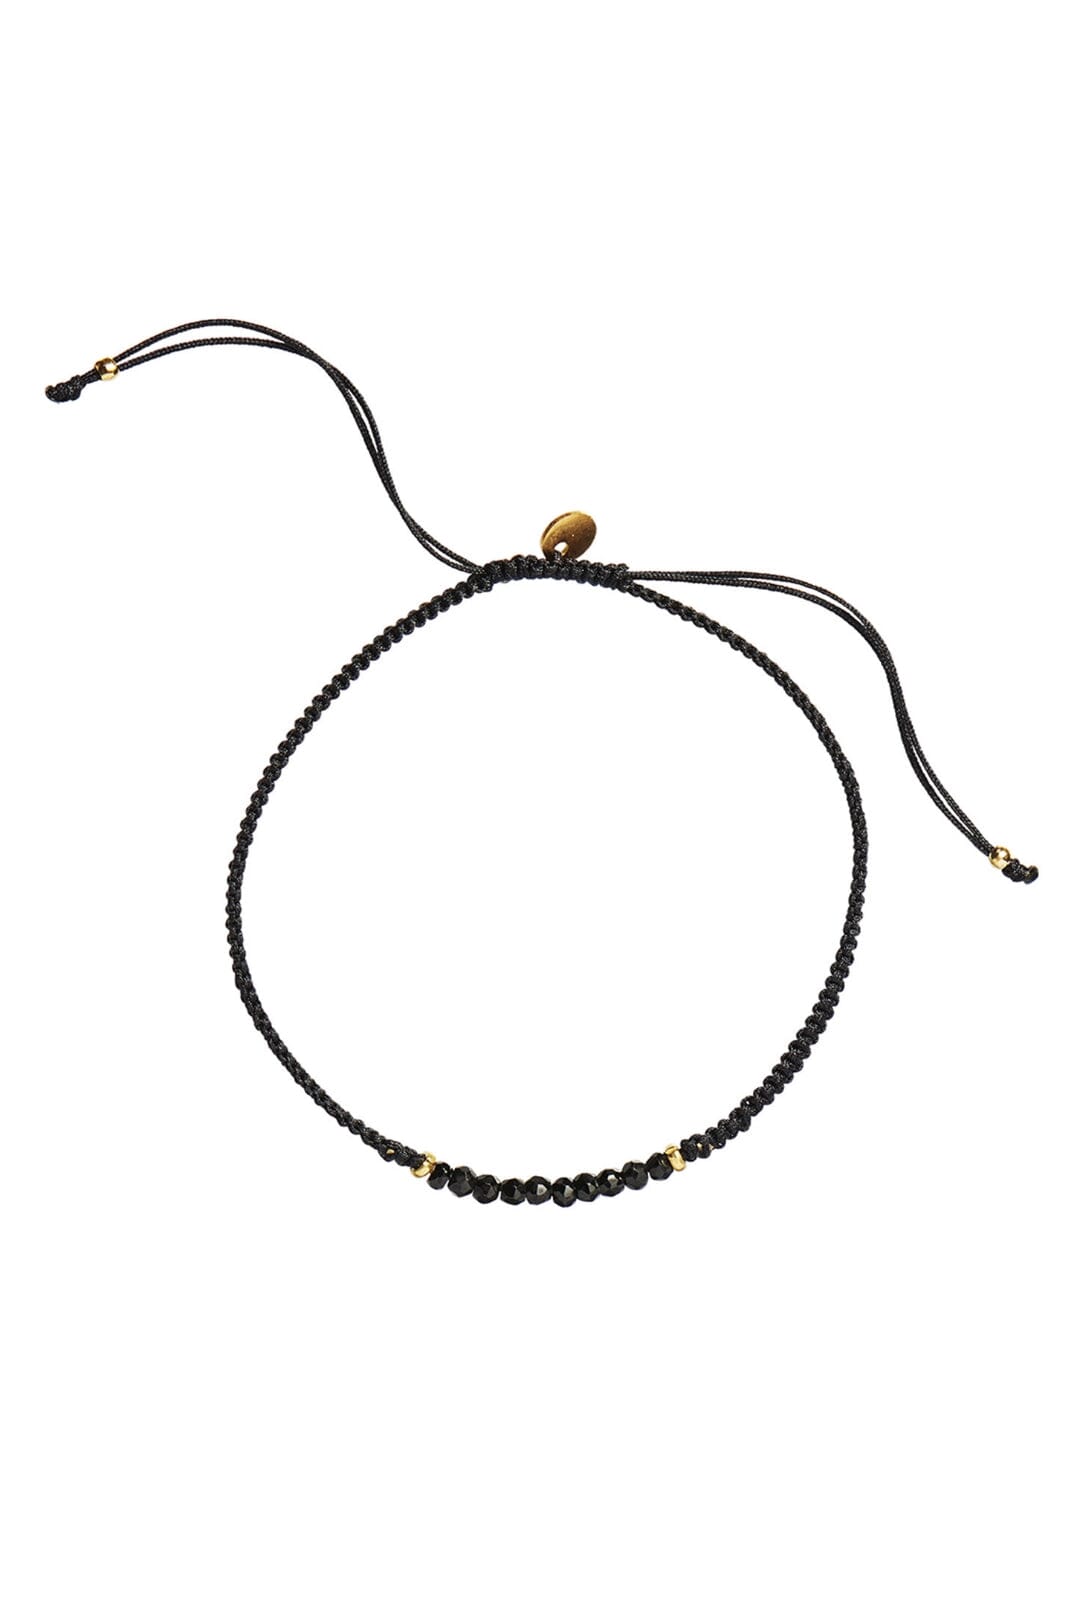 Stine A - Candy Bracelet - Black Spinel And Black Ribbon - 3049-02-Os Armbånd 